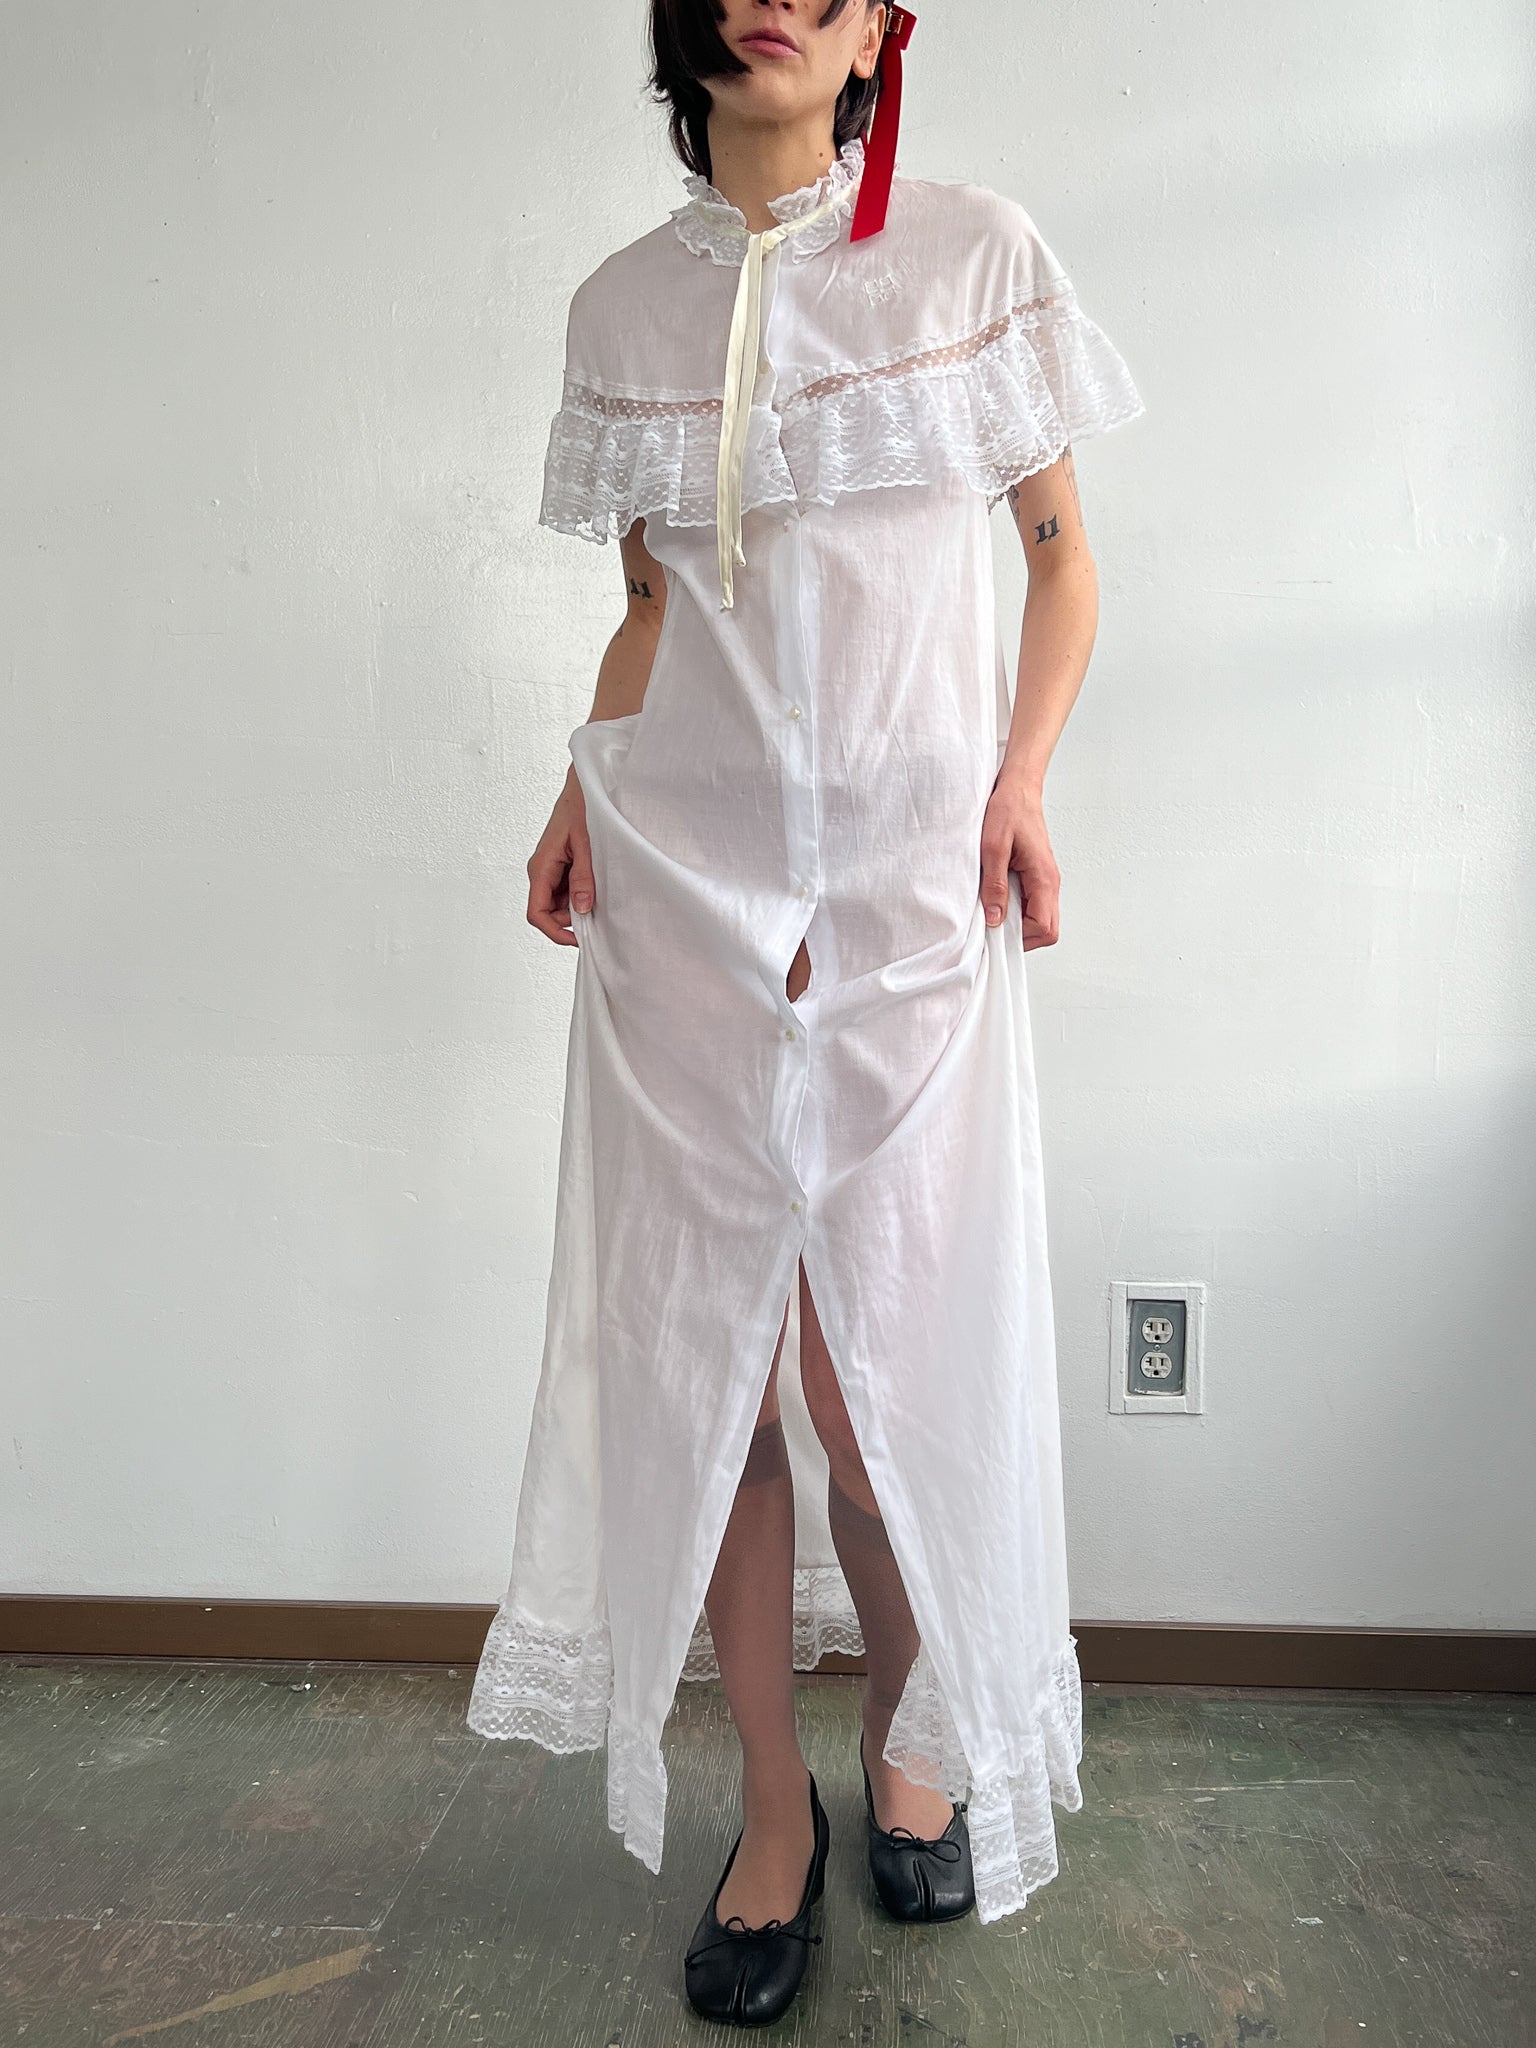 Givenchy Cotton + Lace Dress (L)